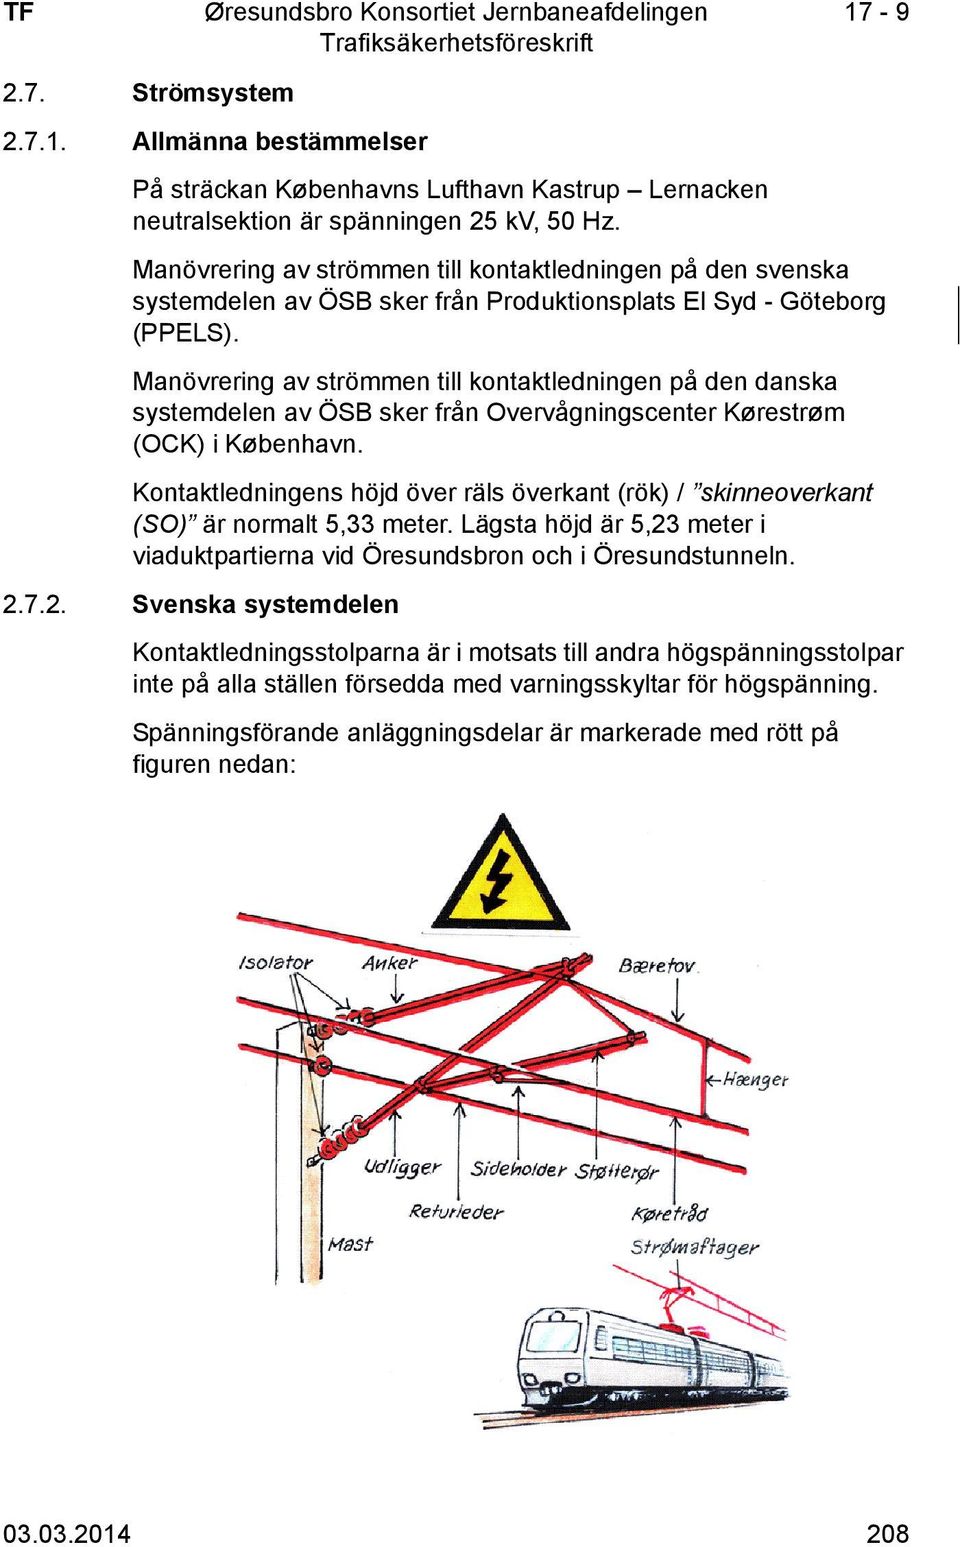 Manövrering av strömmen till kontaktledningen på den danska systemdelen av ÖSB sker från Overvågningscenter Kørestrøm (OCK) i København.